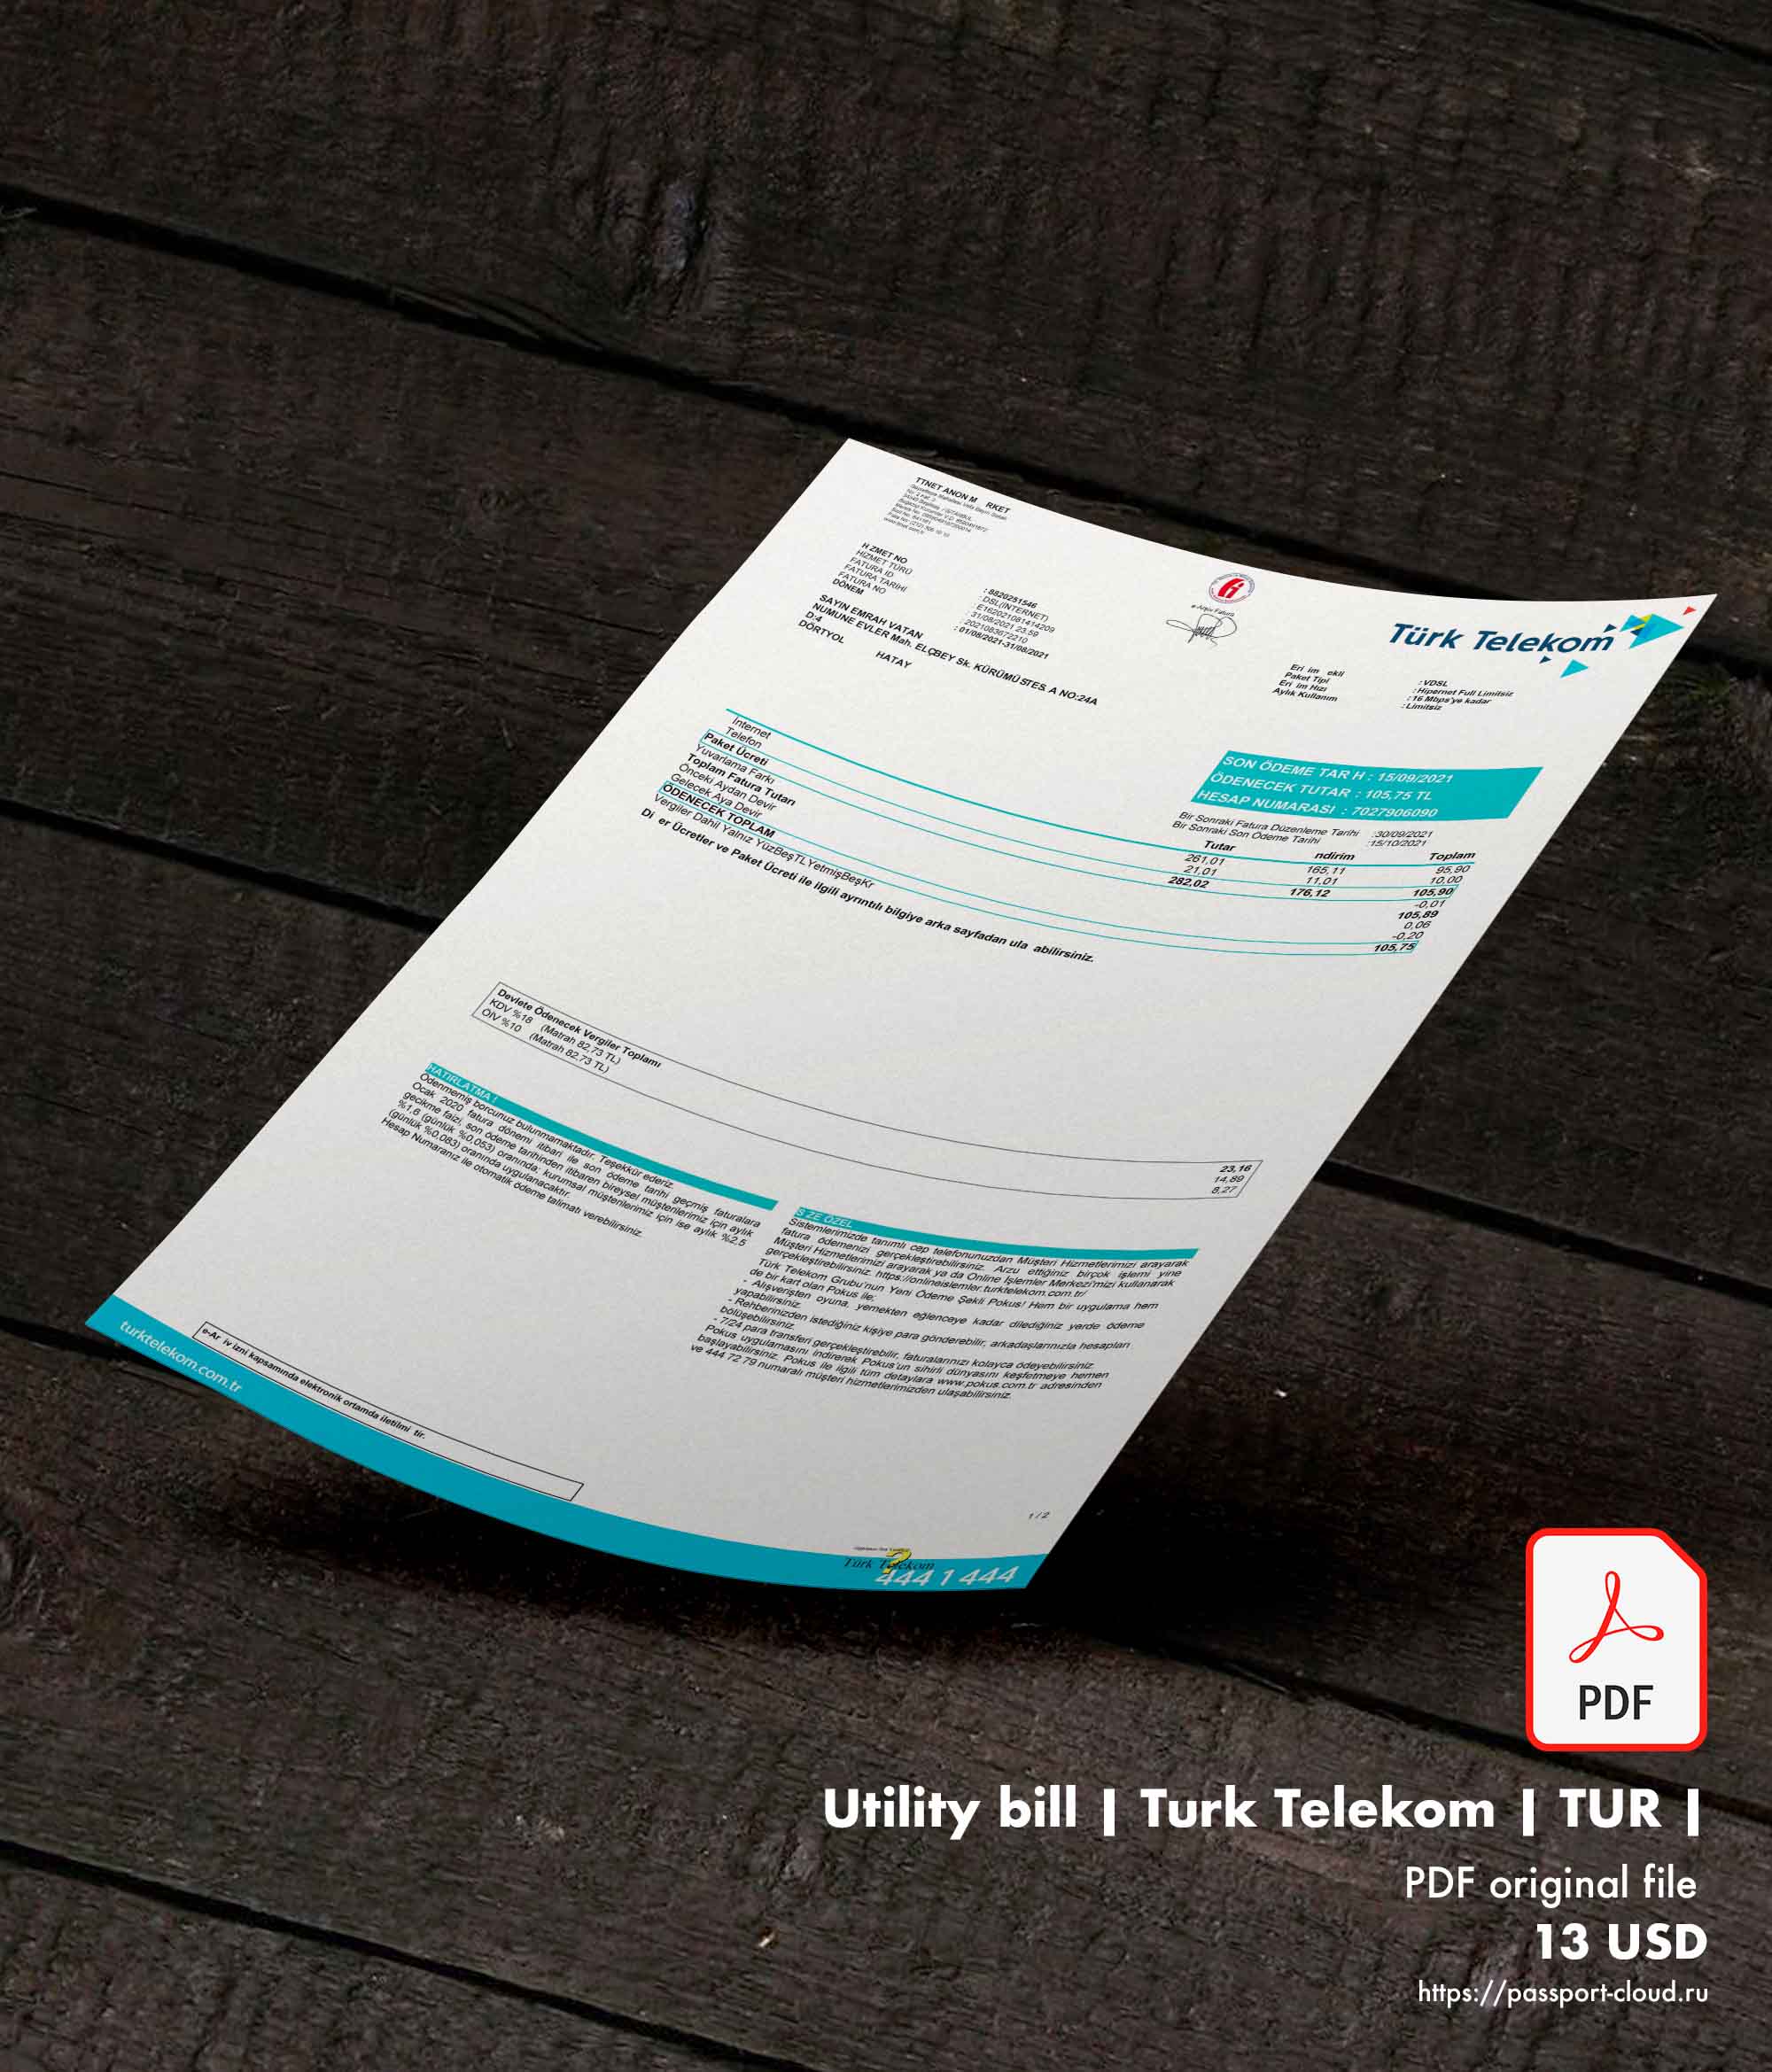 Utility bill | Turk Telekom | TUR |-0